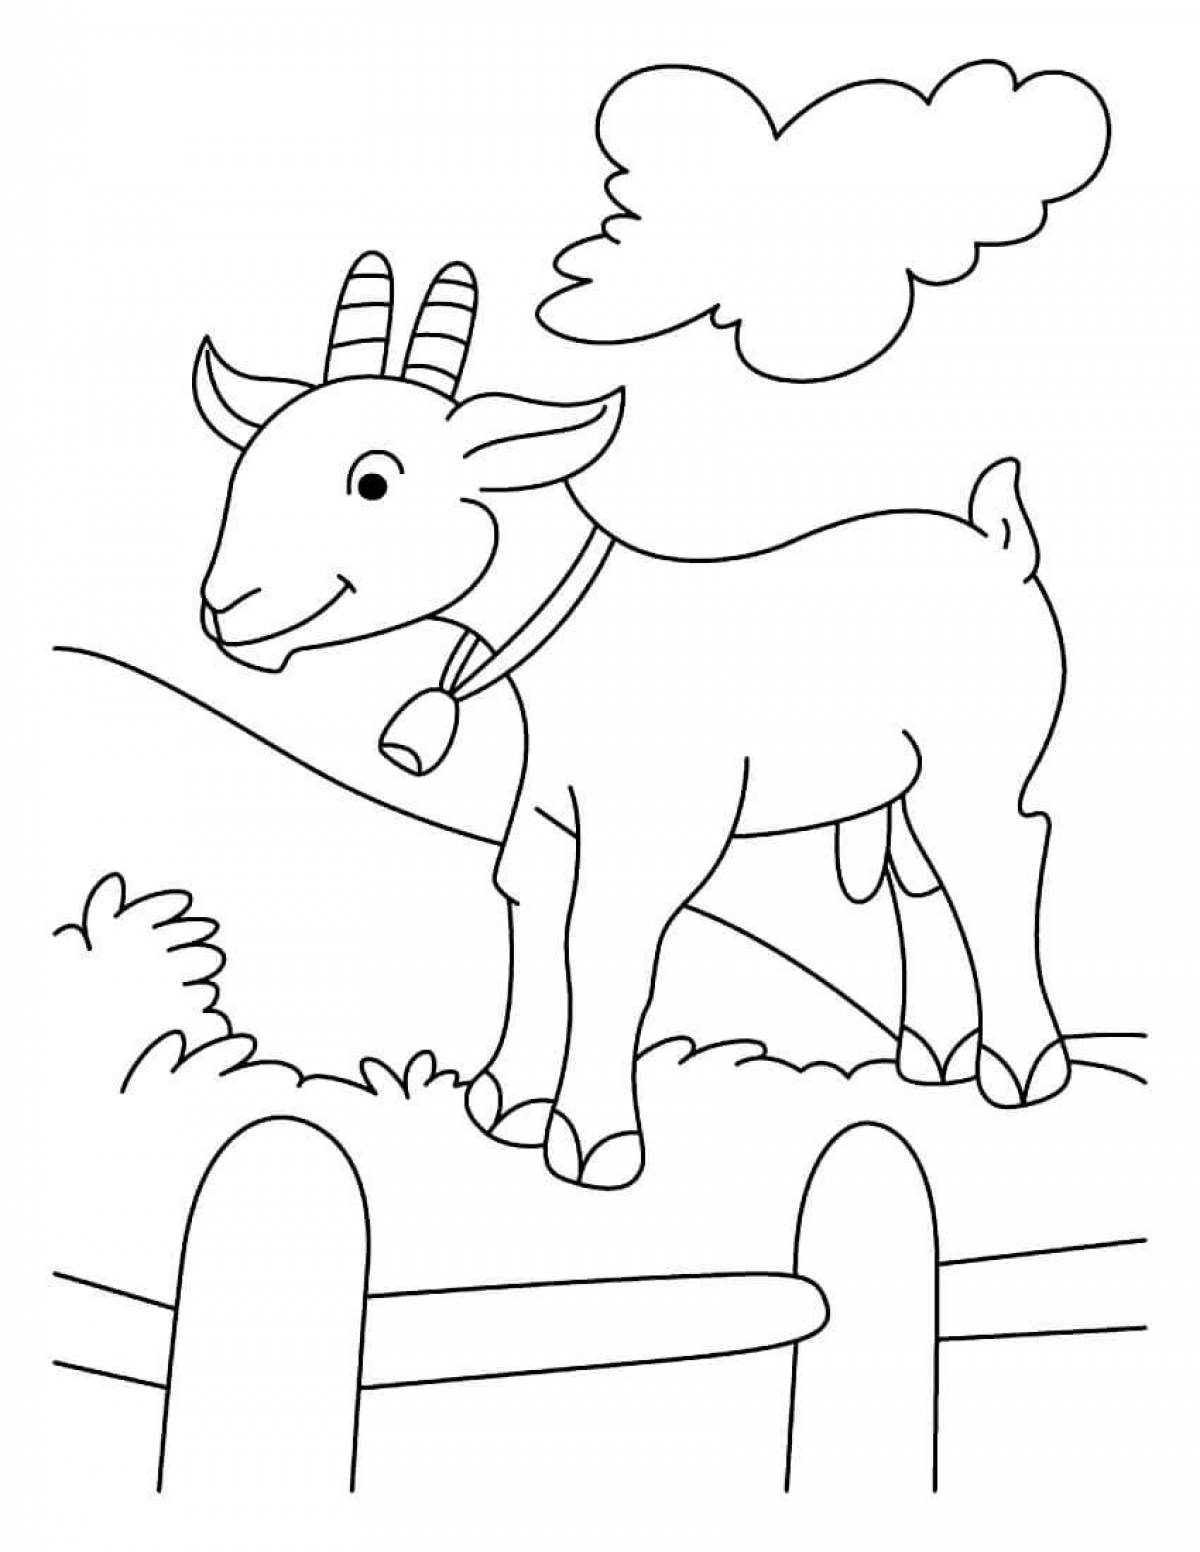 Страница раскраски козла для детей